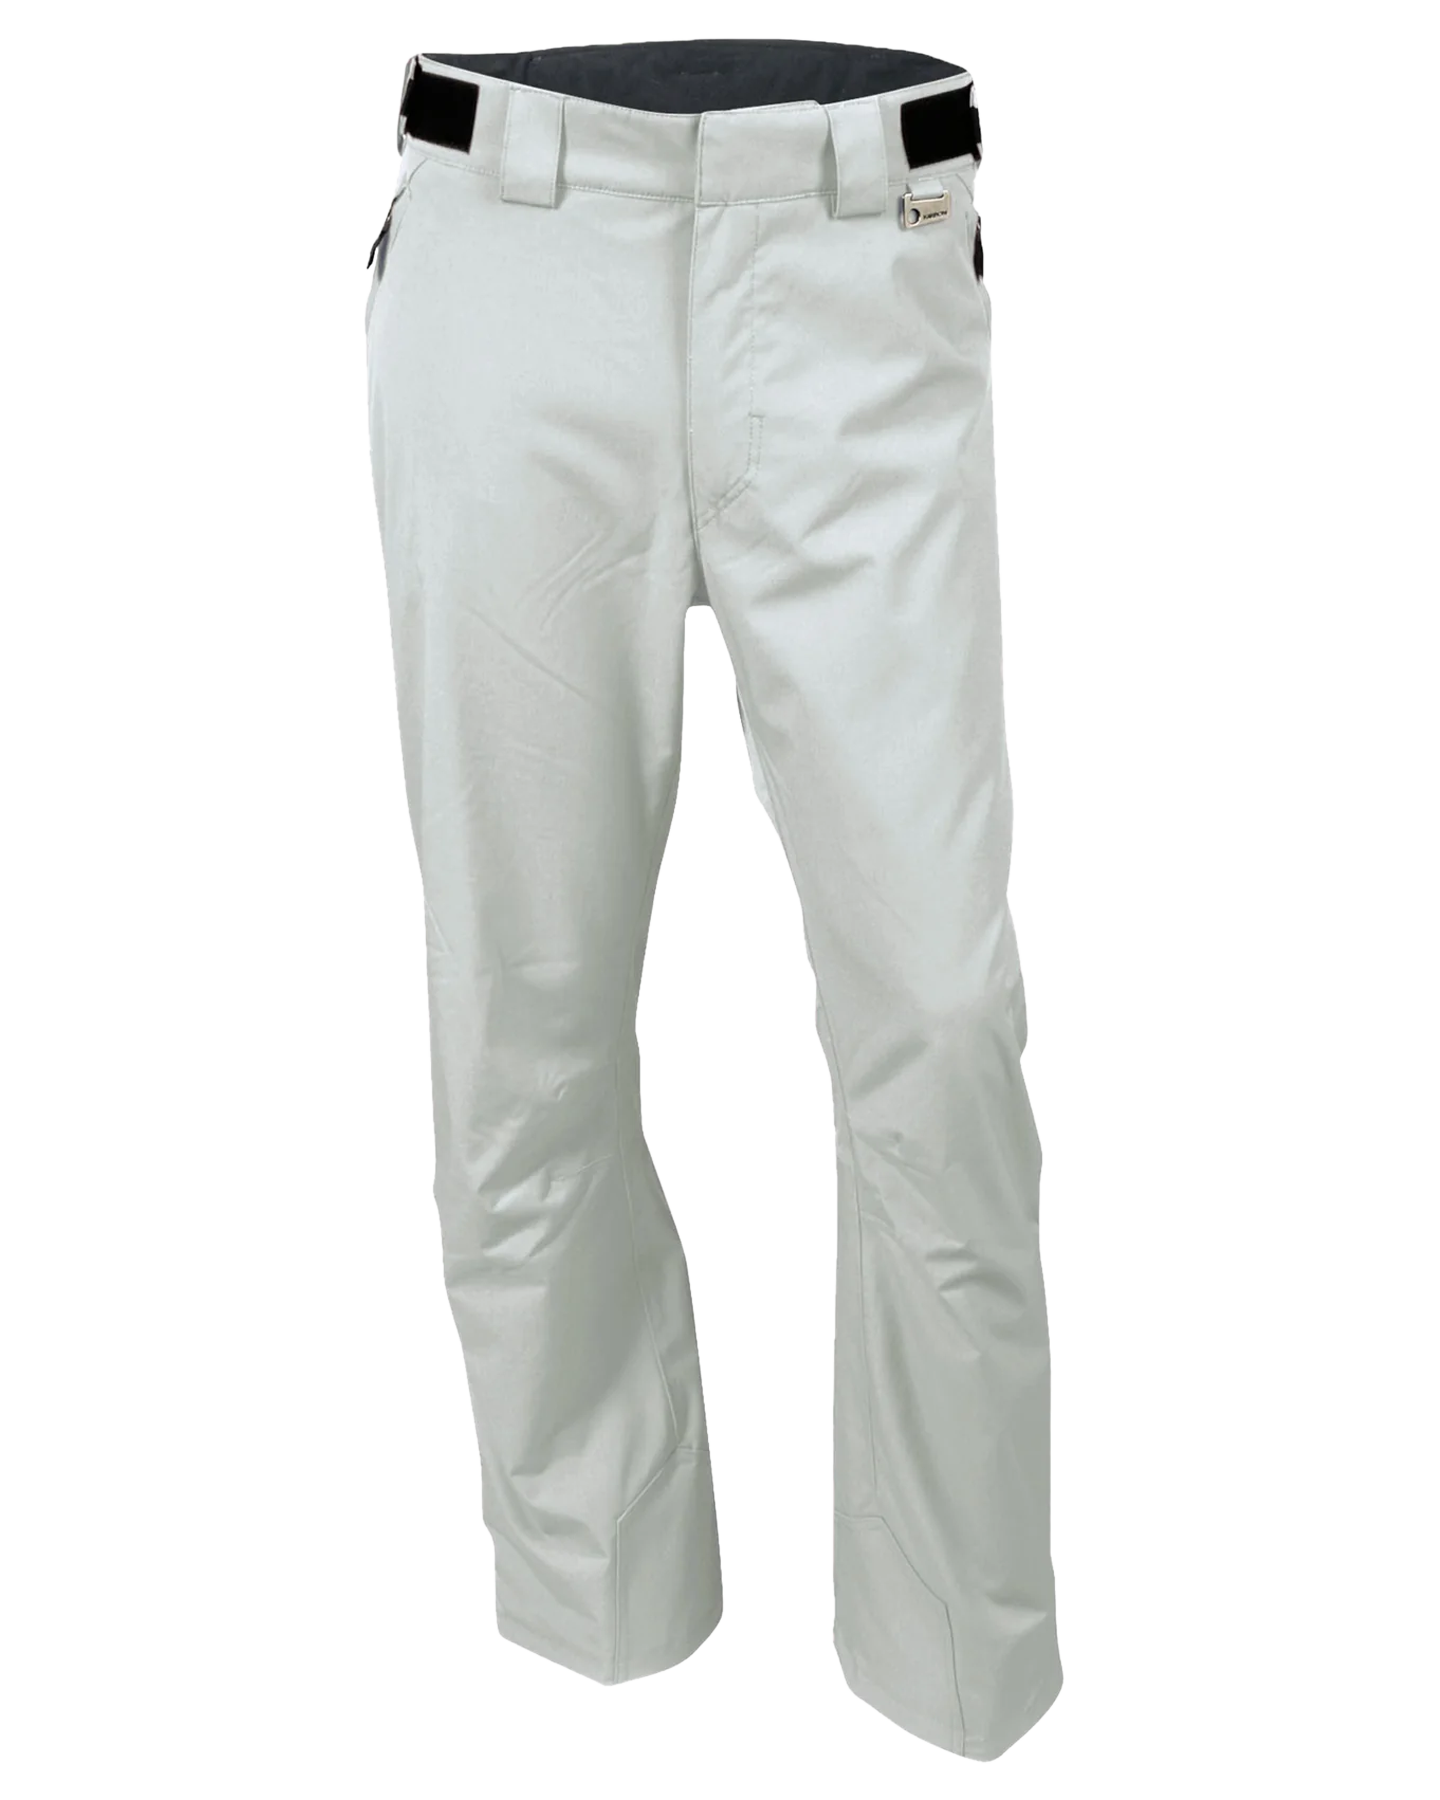 Karbon Silver II Short Graphite Alpha Snow Pants - Glacier Men's Snow Pants - SnowSkiersWarehouse